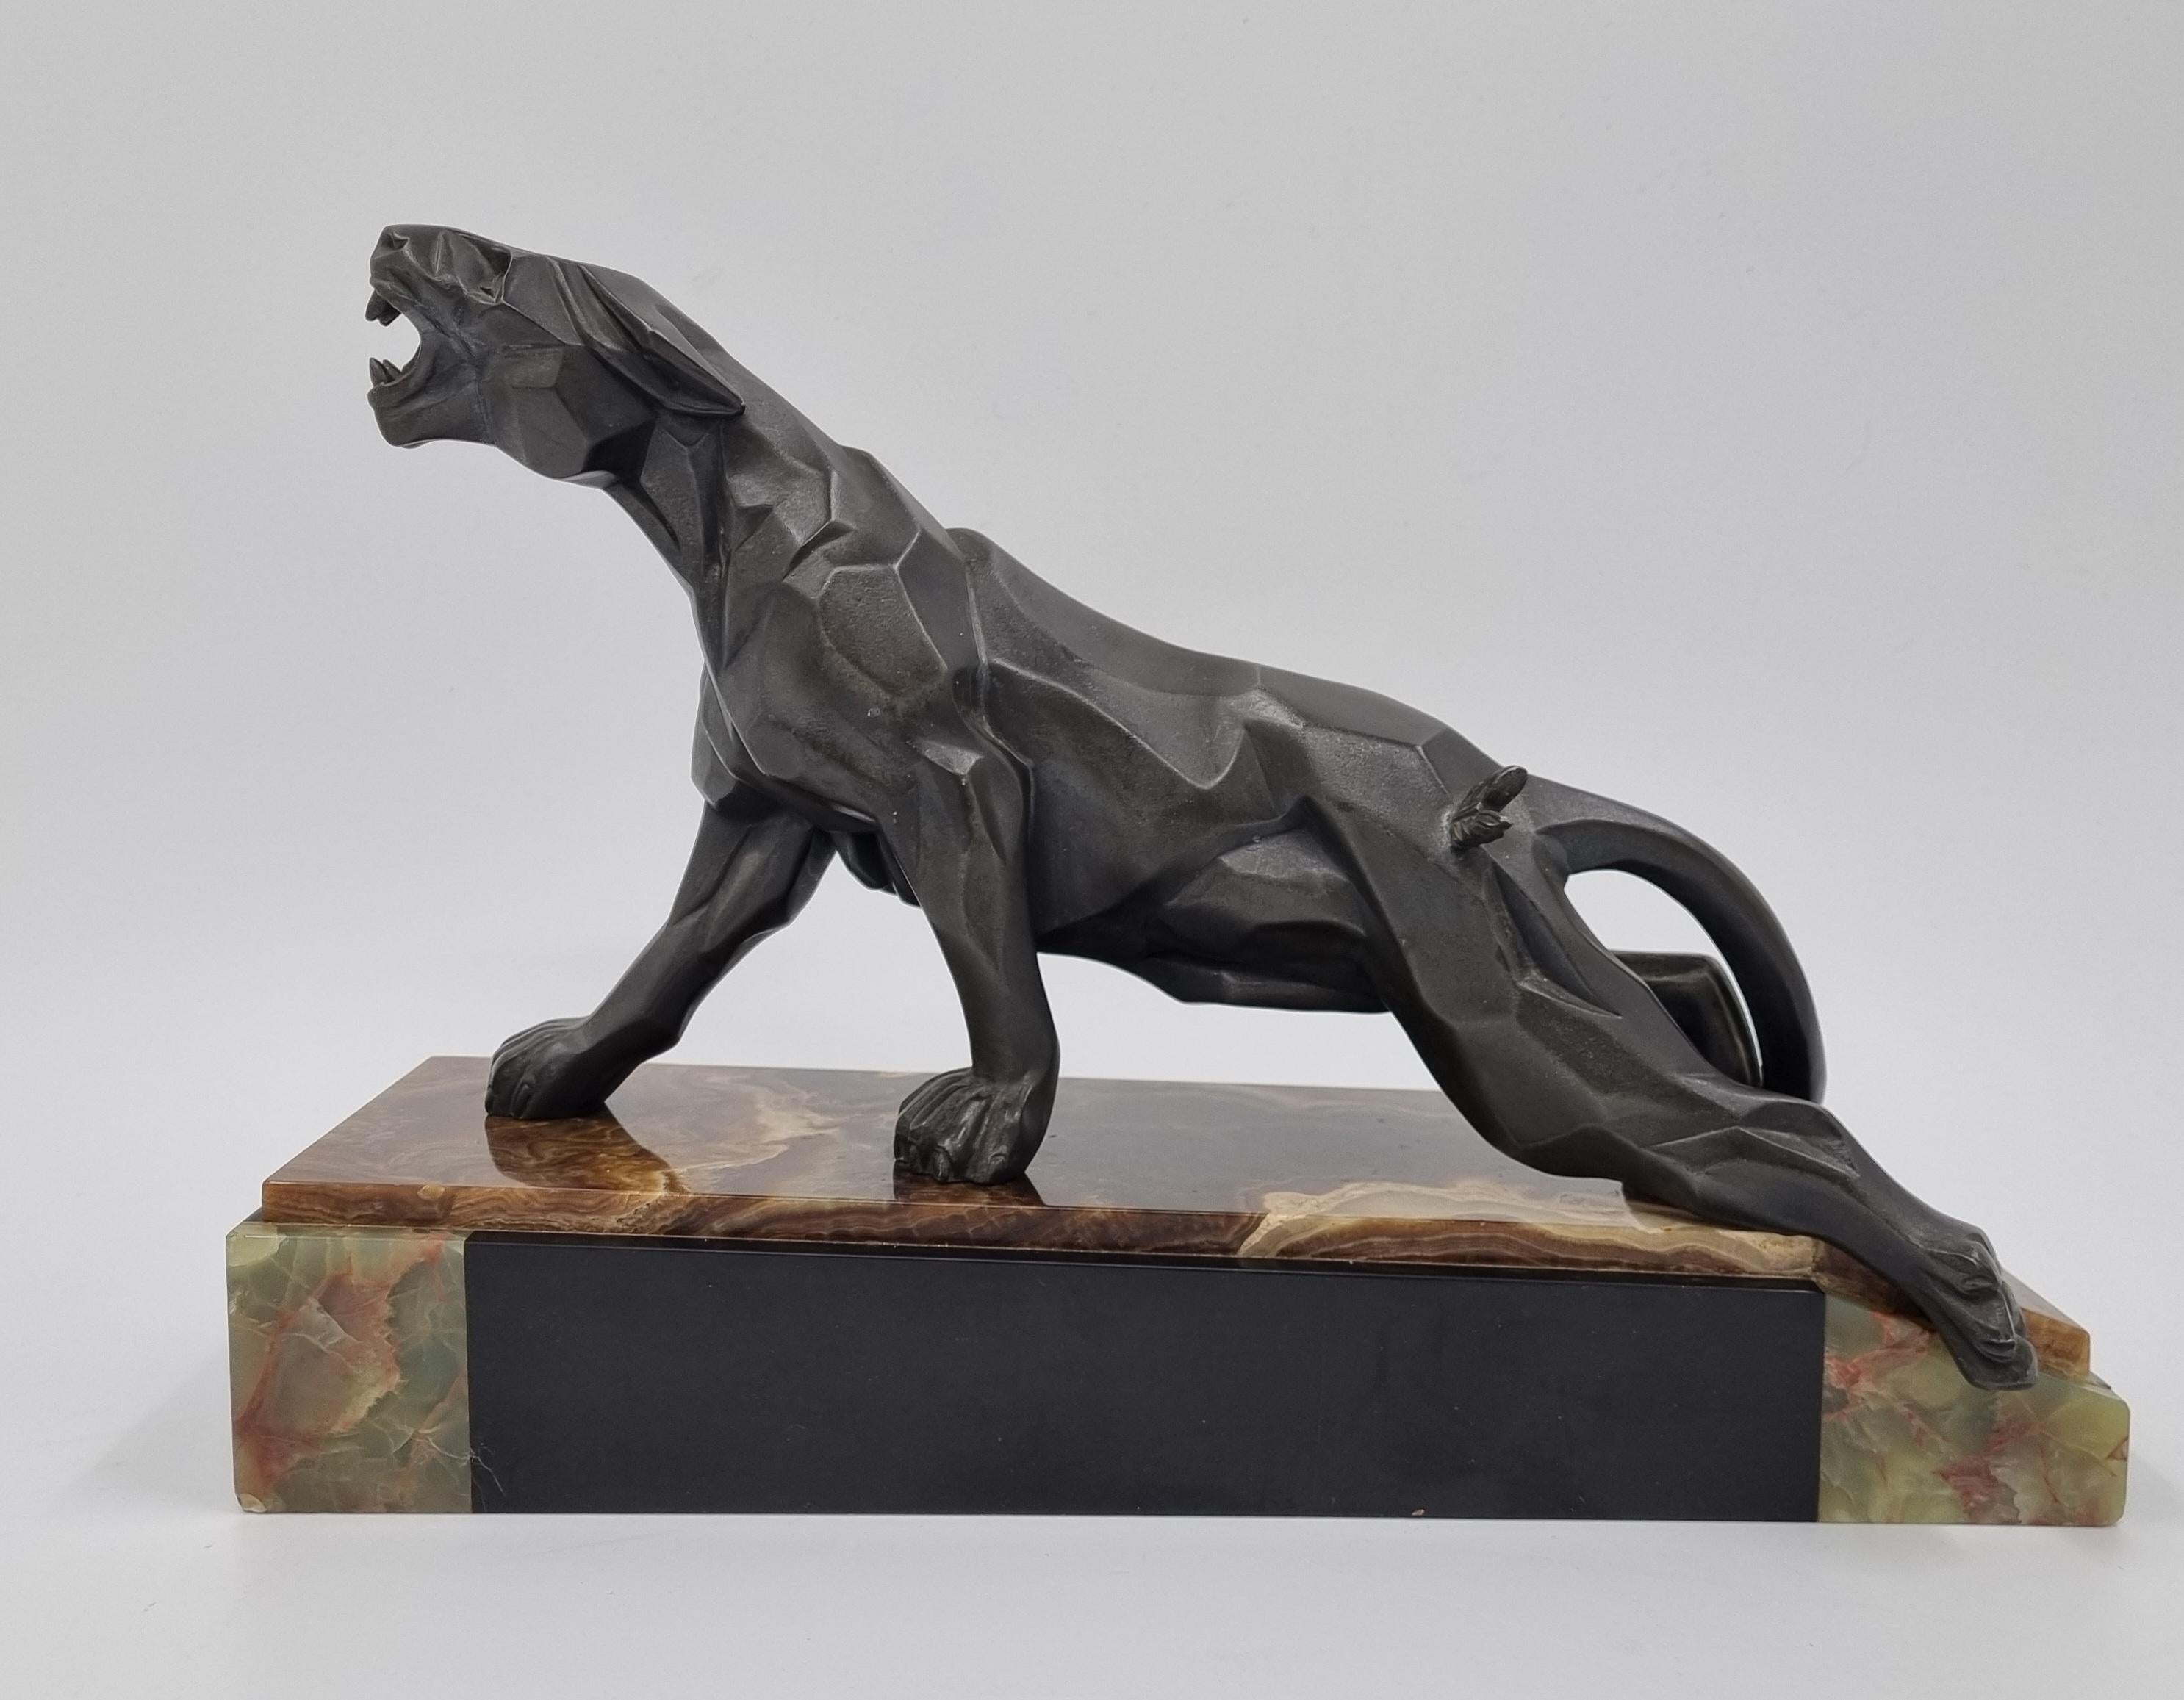 Ein extrem schwer zu findender kubistischer Art Deco Panther von A. Notari, signiert auf dem Schwanz des Panthers.
Gegossen aus kalt bemaltem Zinn, auf einem Sockel aus mehrfarbigem Marmor und Onyx ruhend.
Ein wunderschönes kubistisches Werk, das